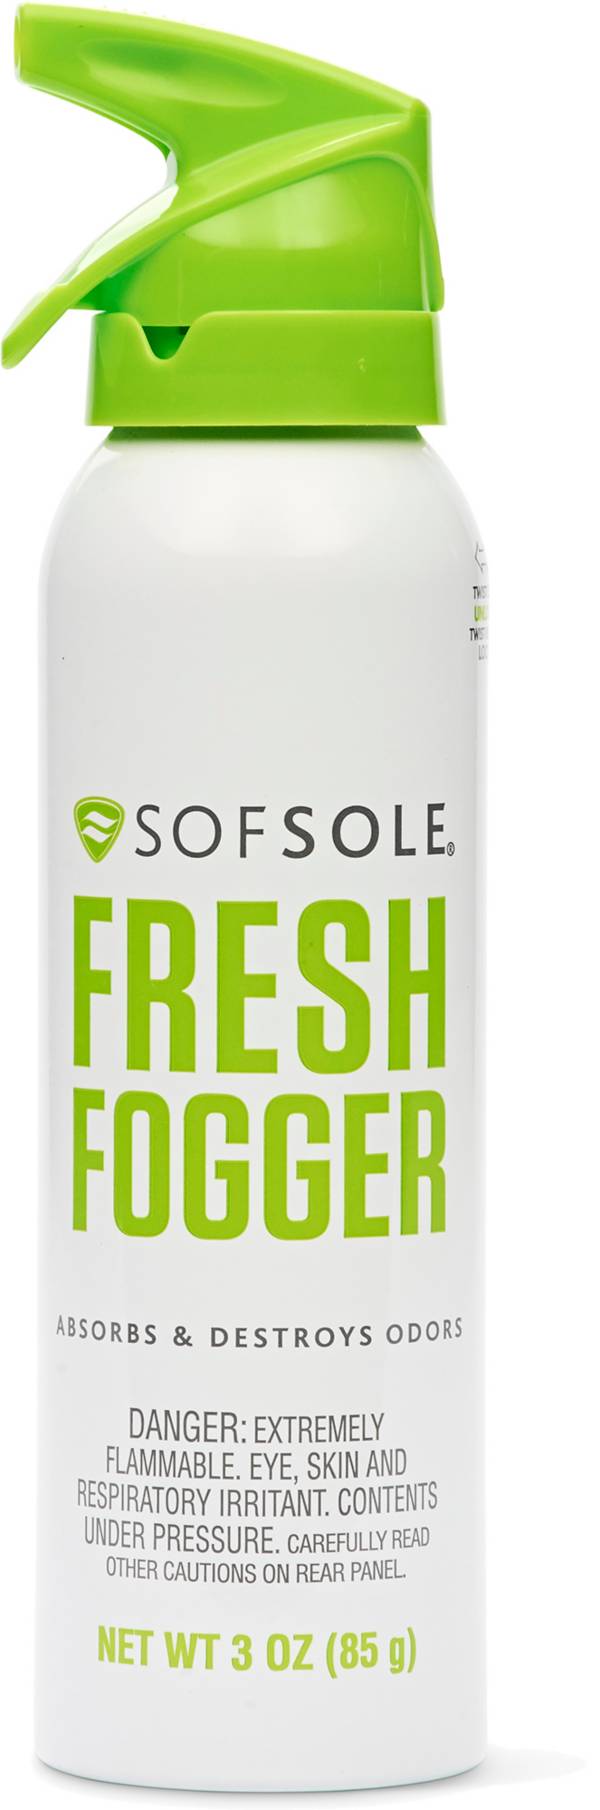 Sof Sole Fresh Fogger Deodorizer product image